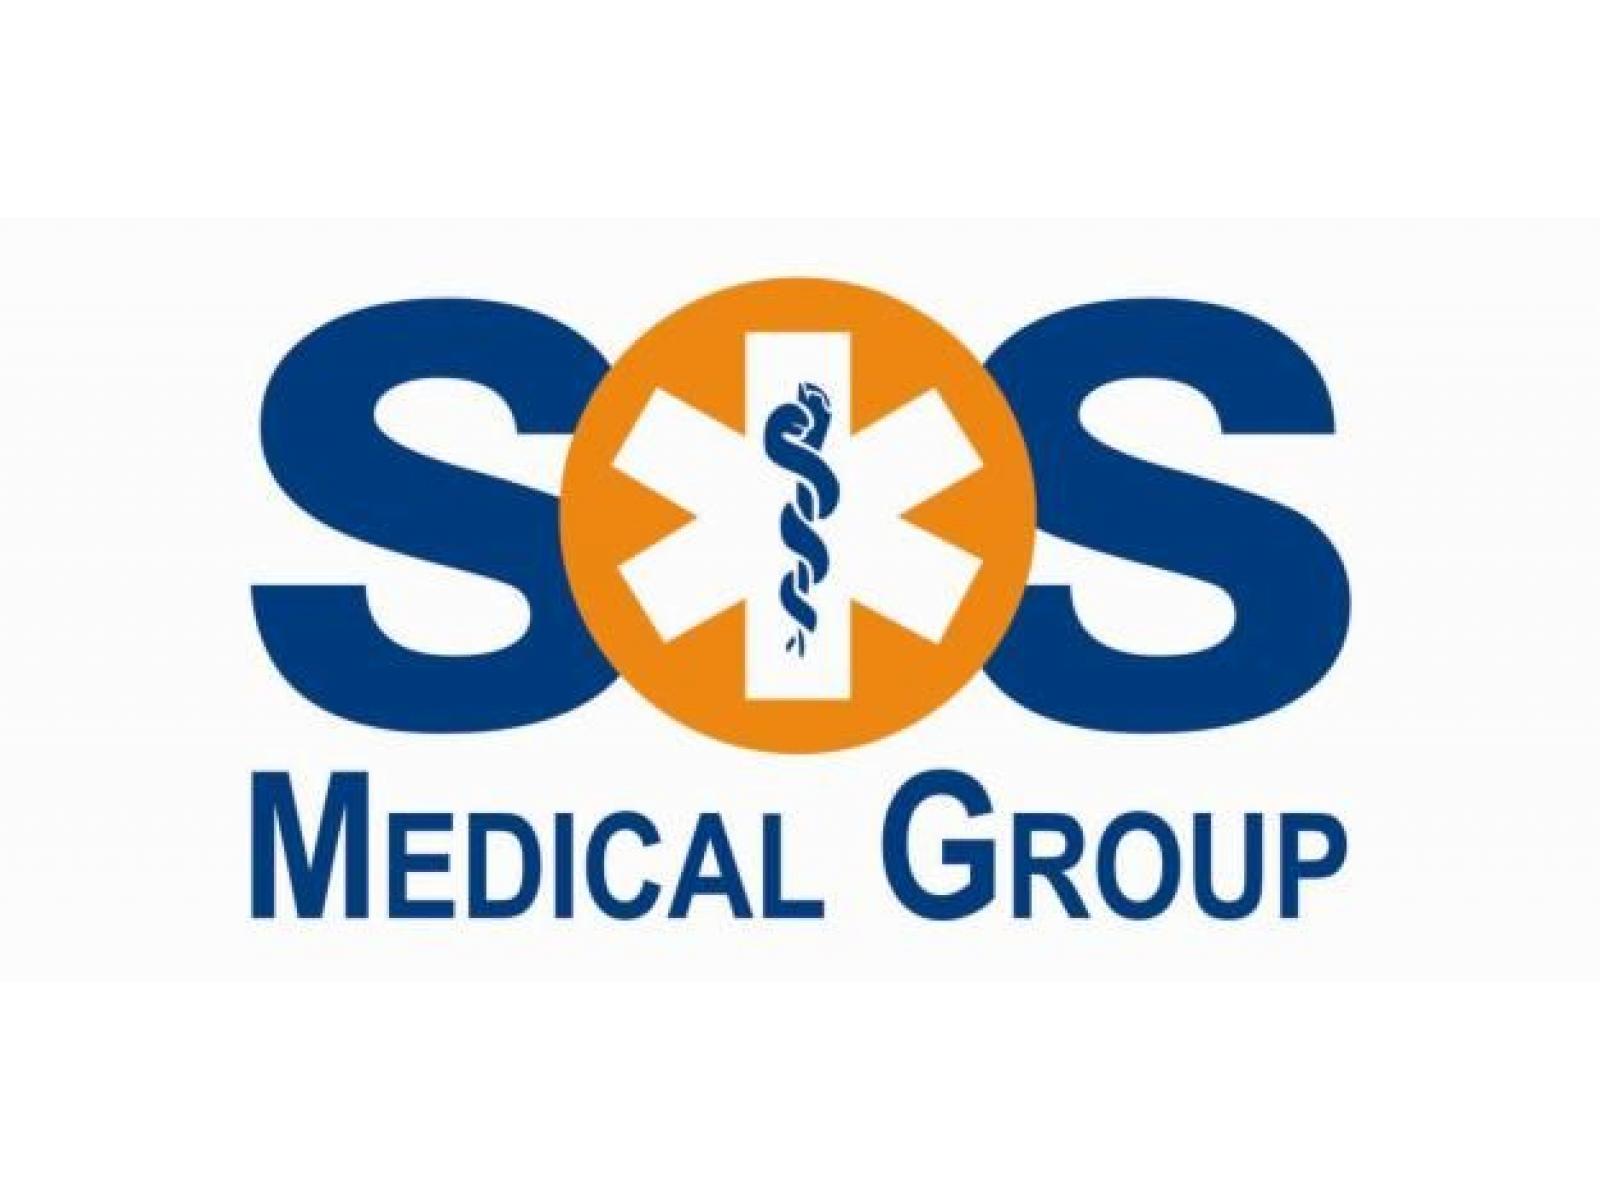 SOS MEDICAL & AMBULANCE SERVICES - sigla_SOS.jpg